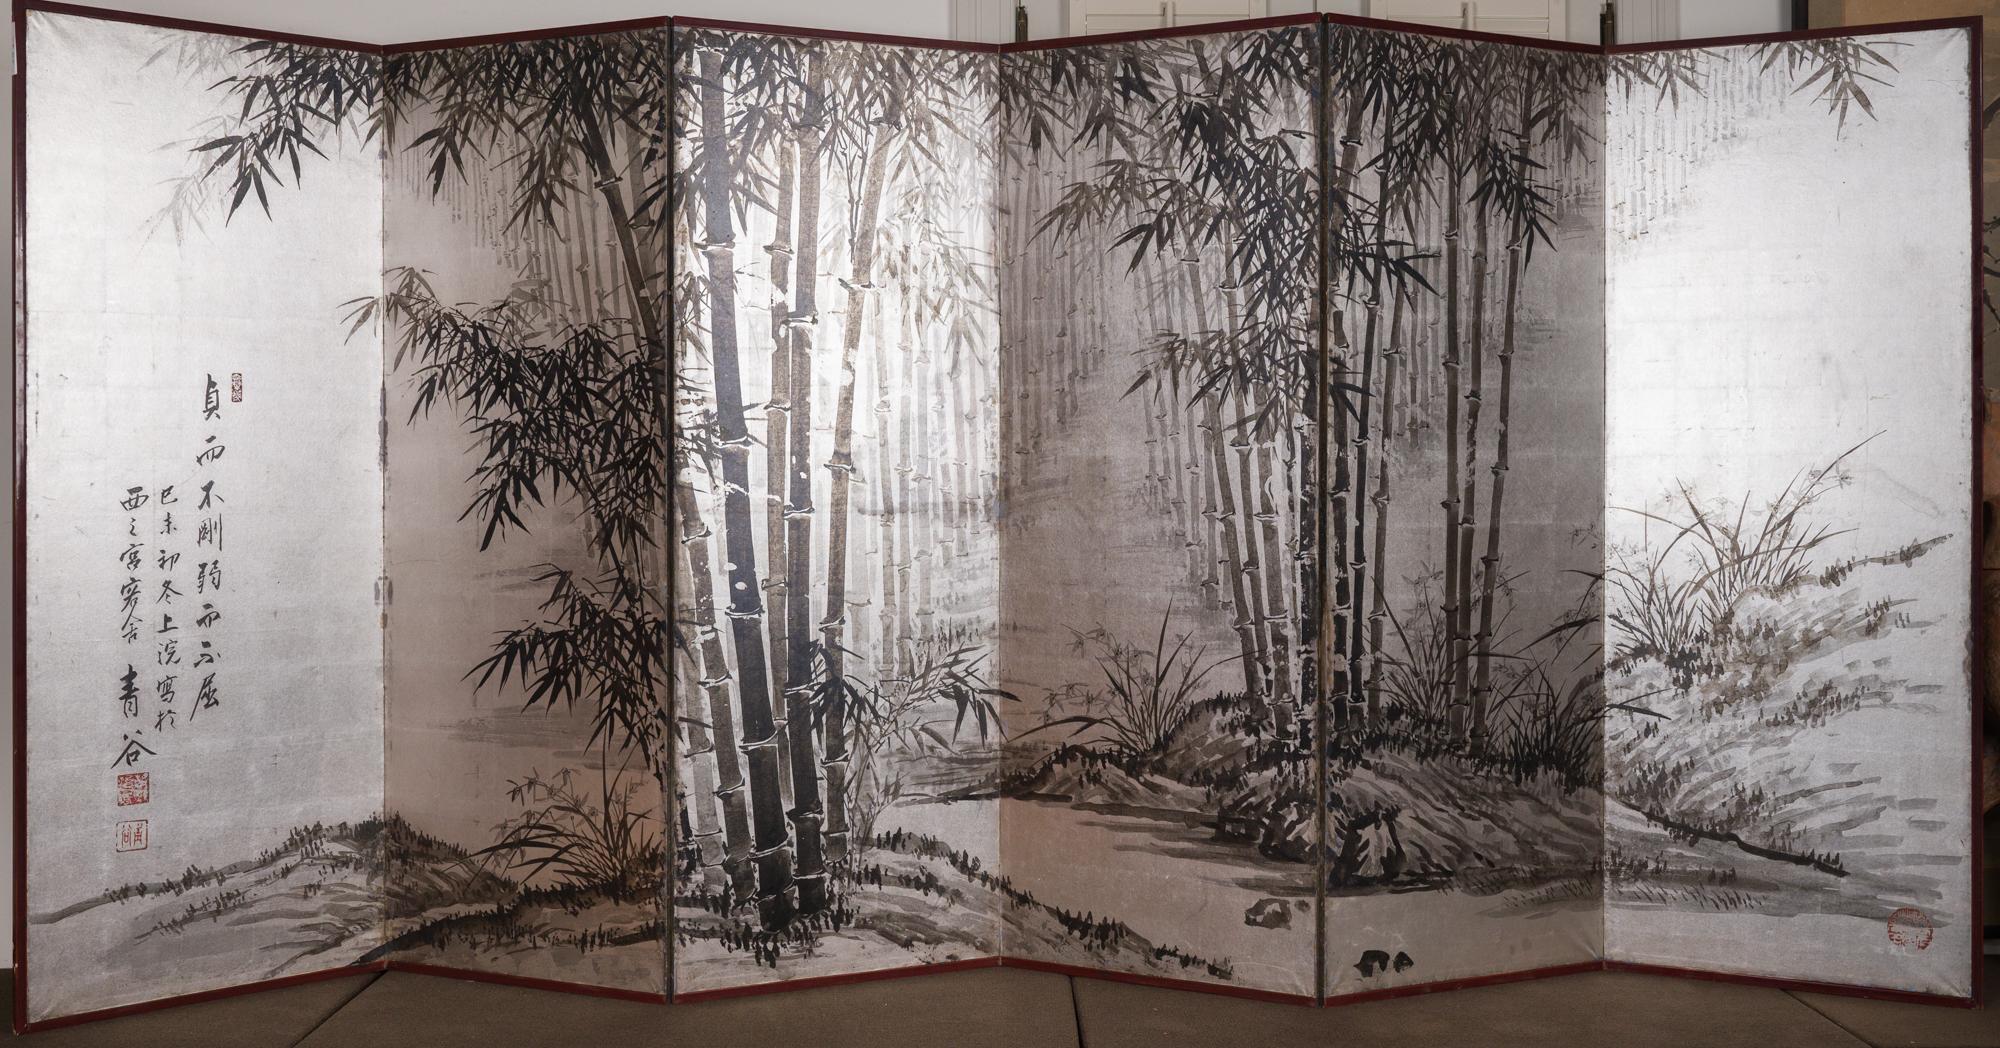 Tuschemalerei von Bambus auf schön patiniertem Blattsilber. Datiert 1919, Unterschrift lautet: Seikoku.